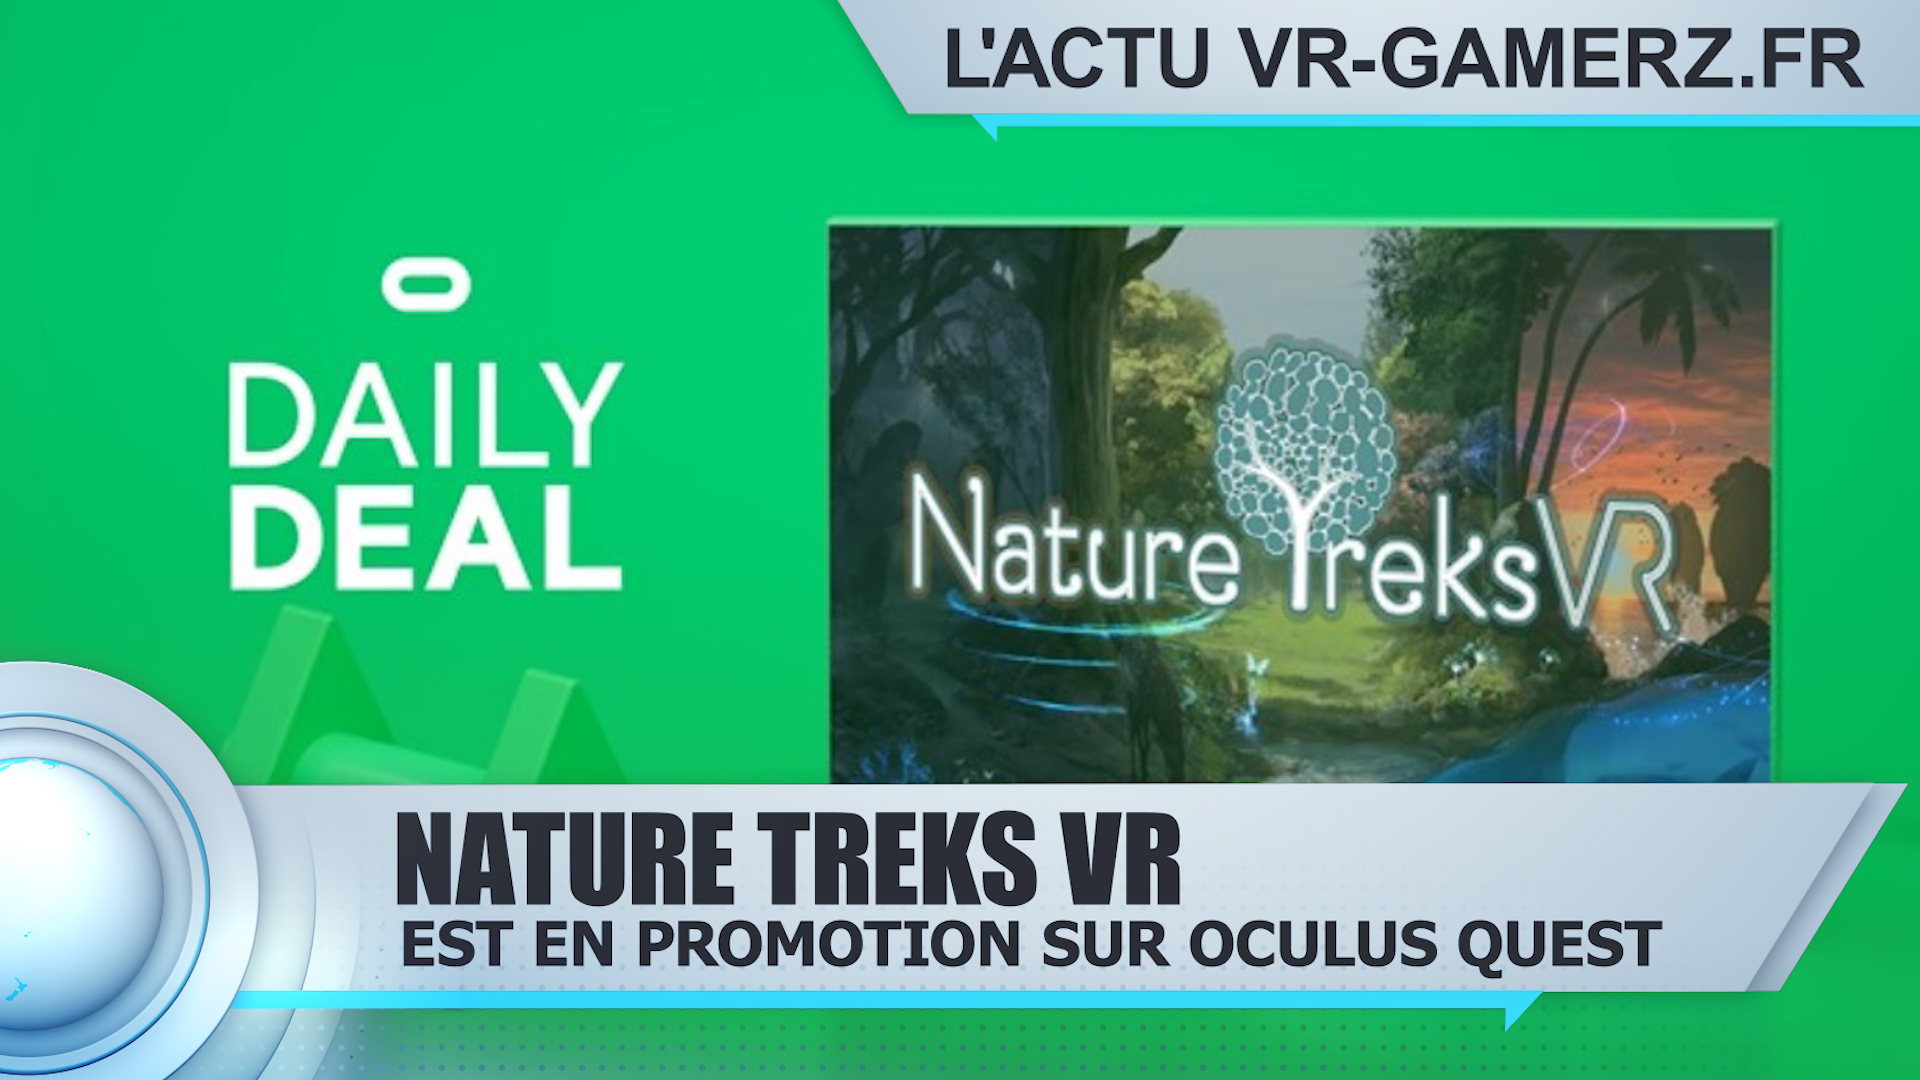 Nature Treks VR est en promotion sur Oculus quest